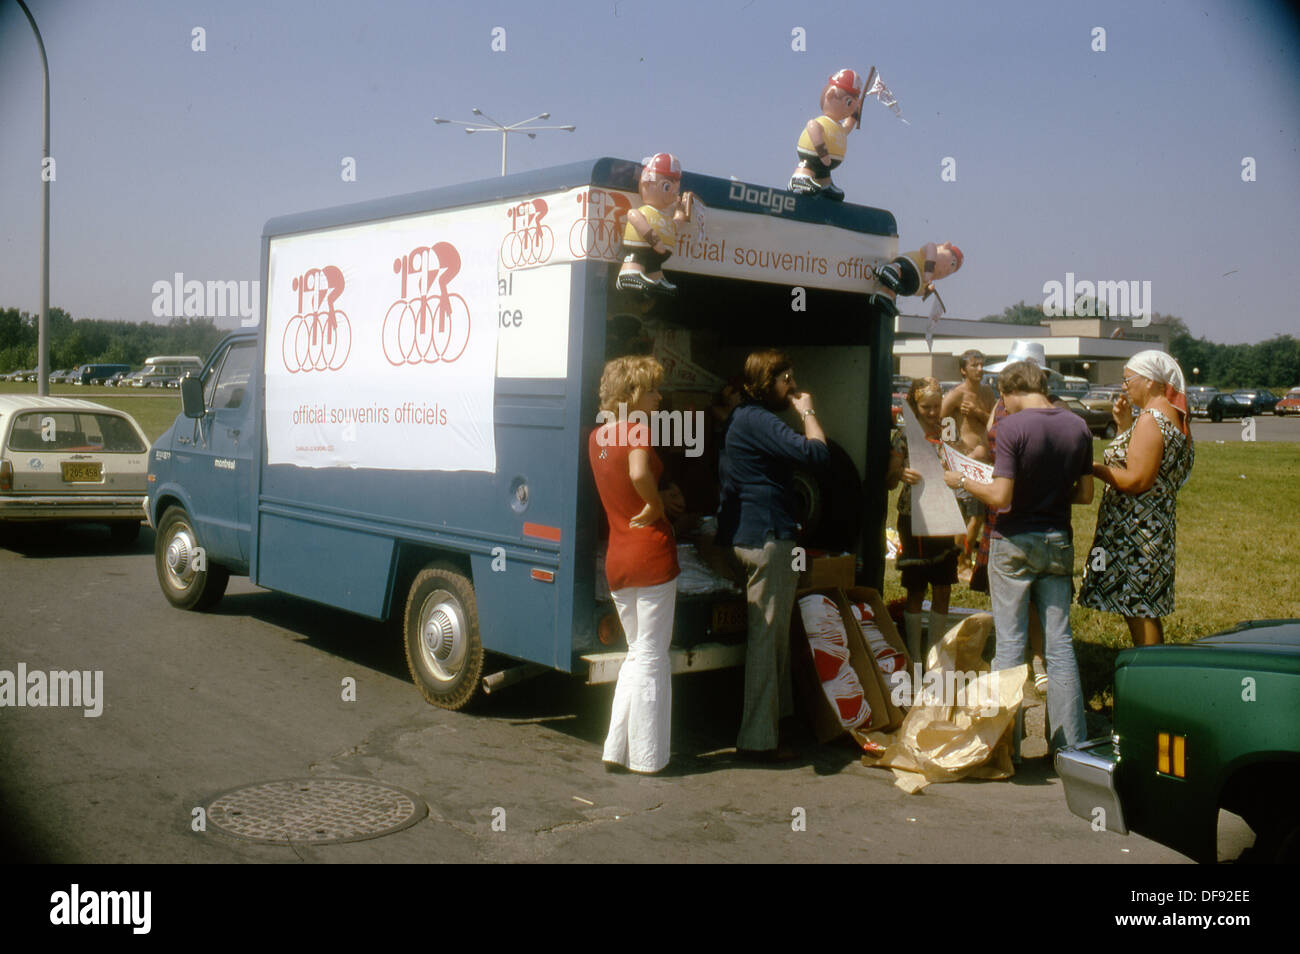 Un souvenir van vende doni ai clienti presso il 1974 mondiali di ciclismo, Montreal Canada, un evento vinto da Eddy Merckx. Foto Stock